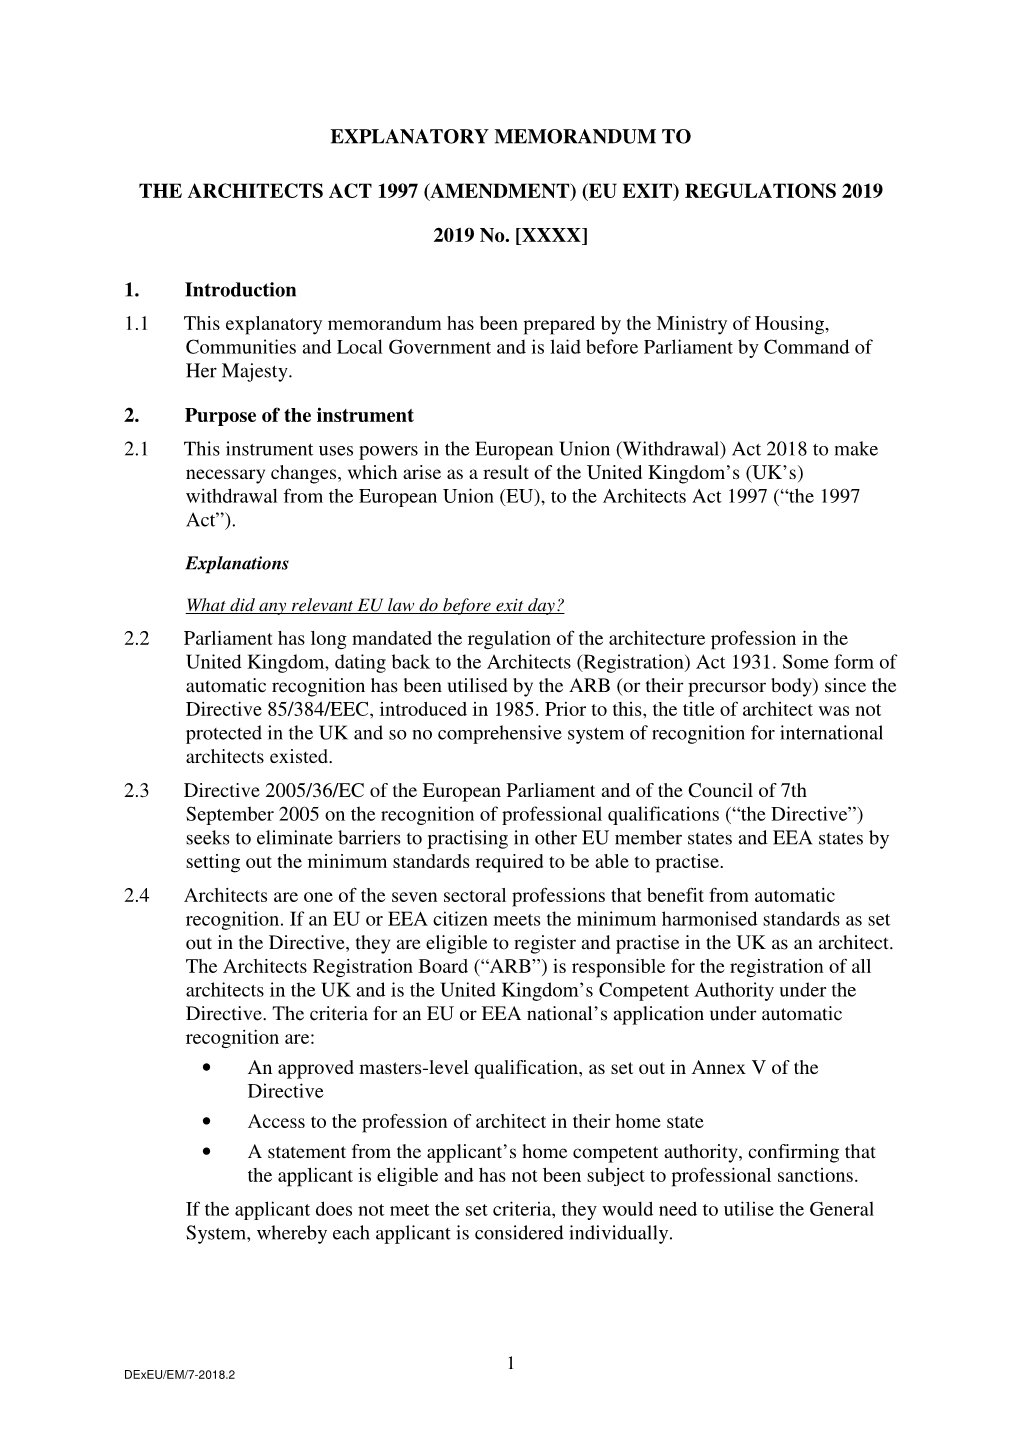 The Architects Act 1997 (Amendment) (Eu Exit) Regulations 2019